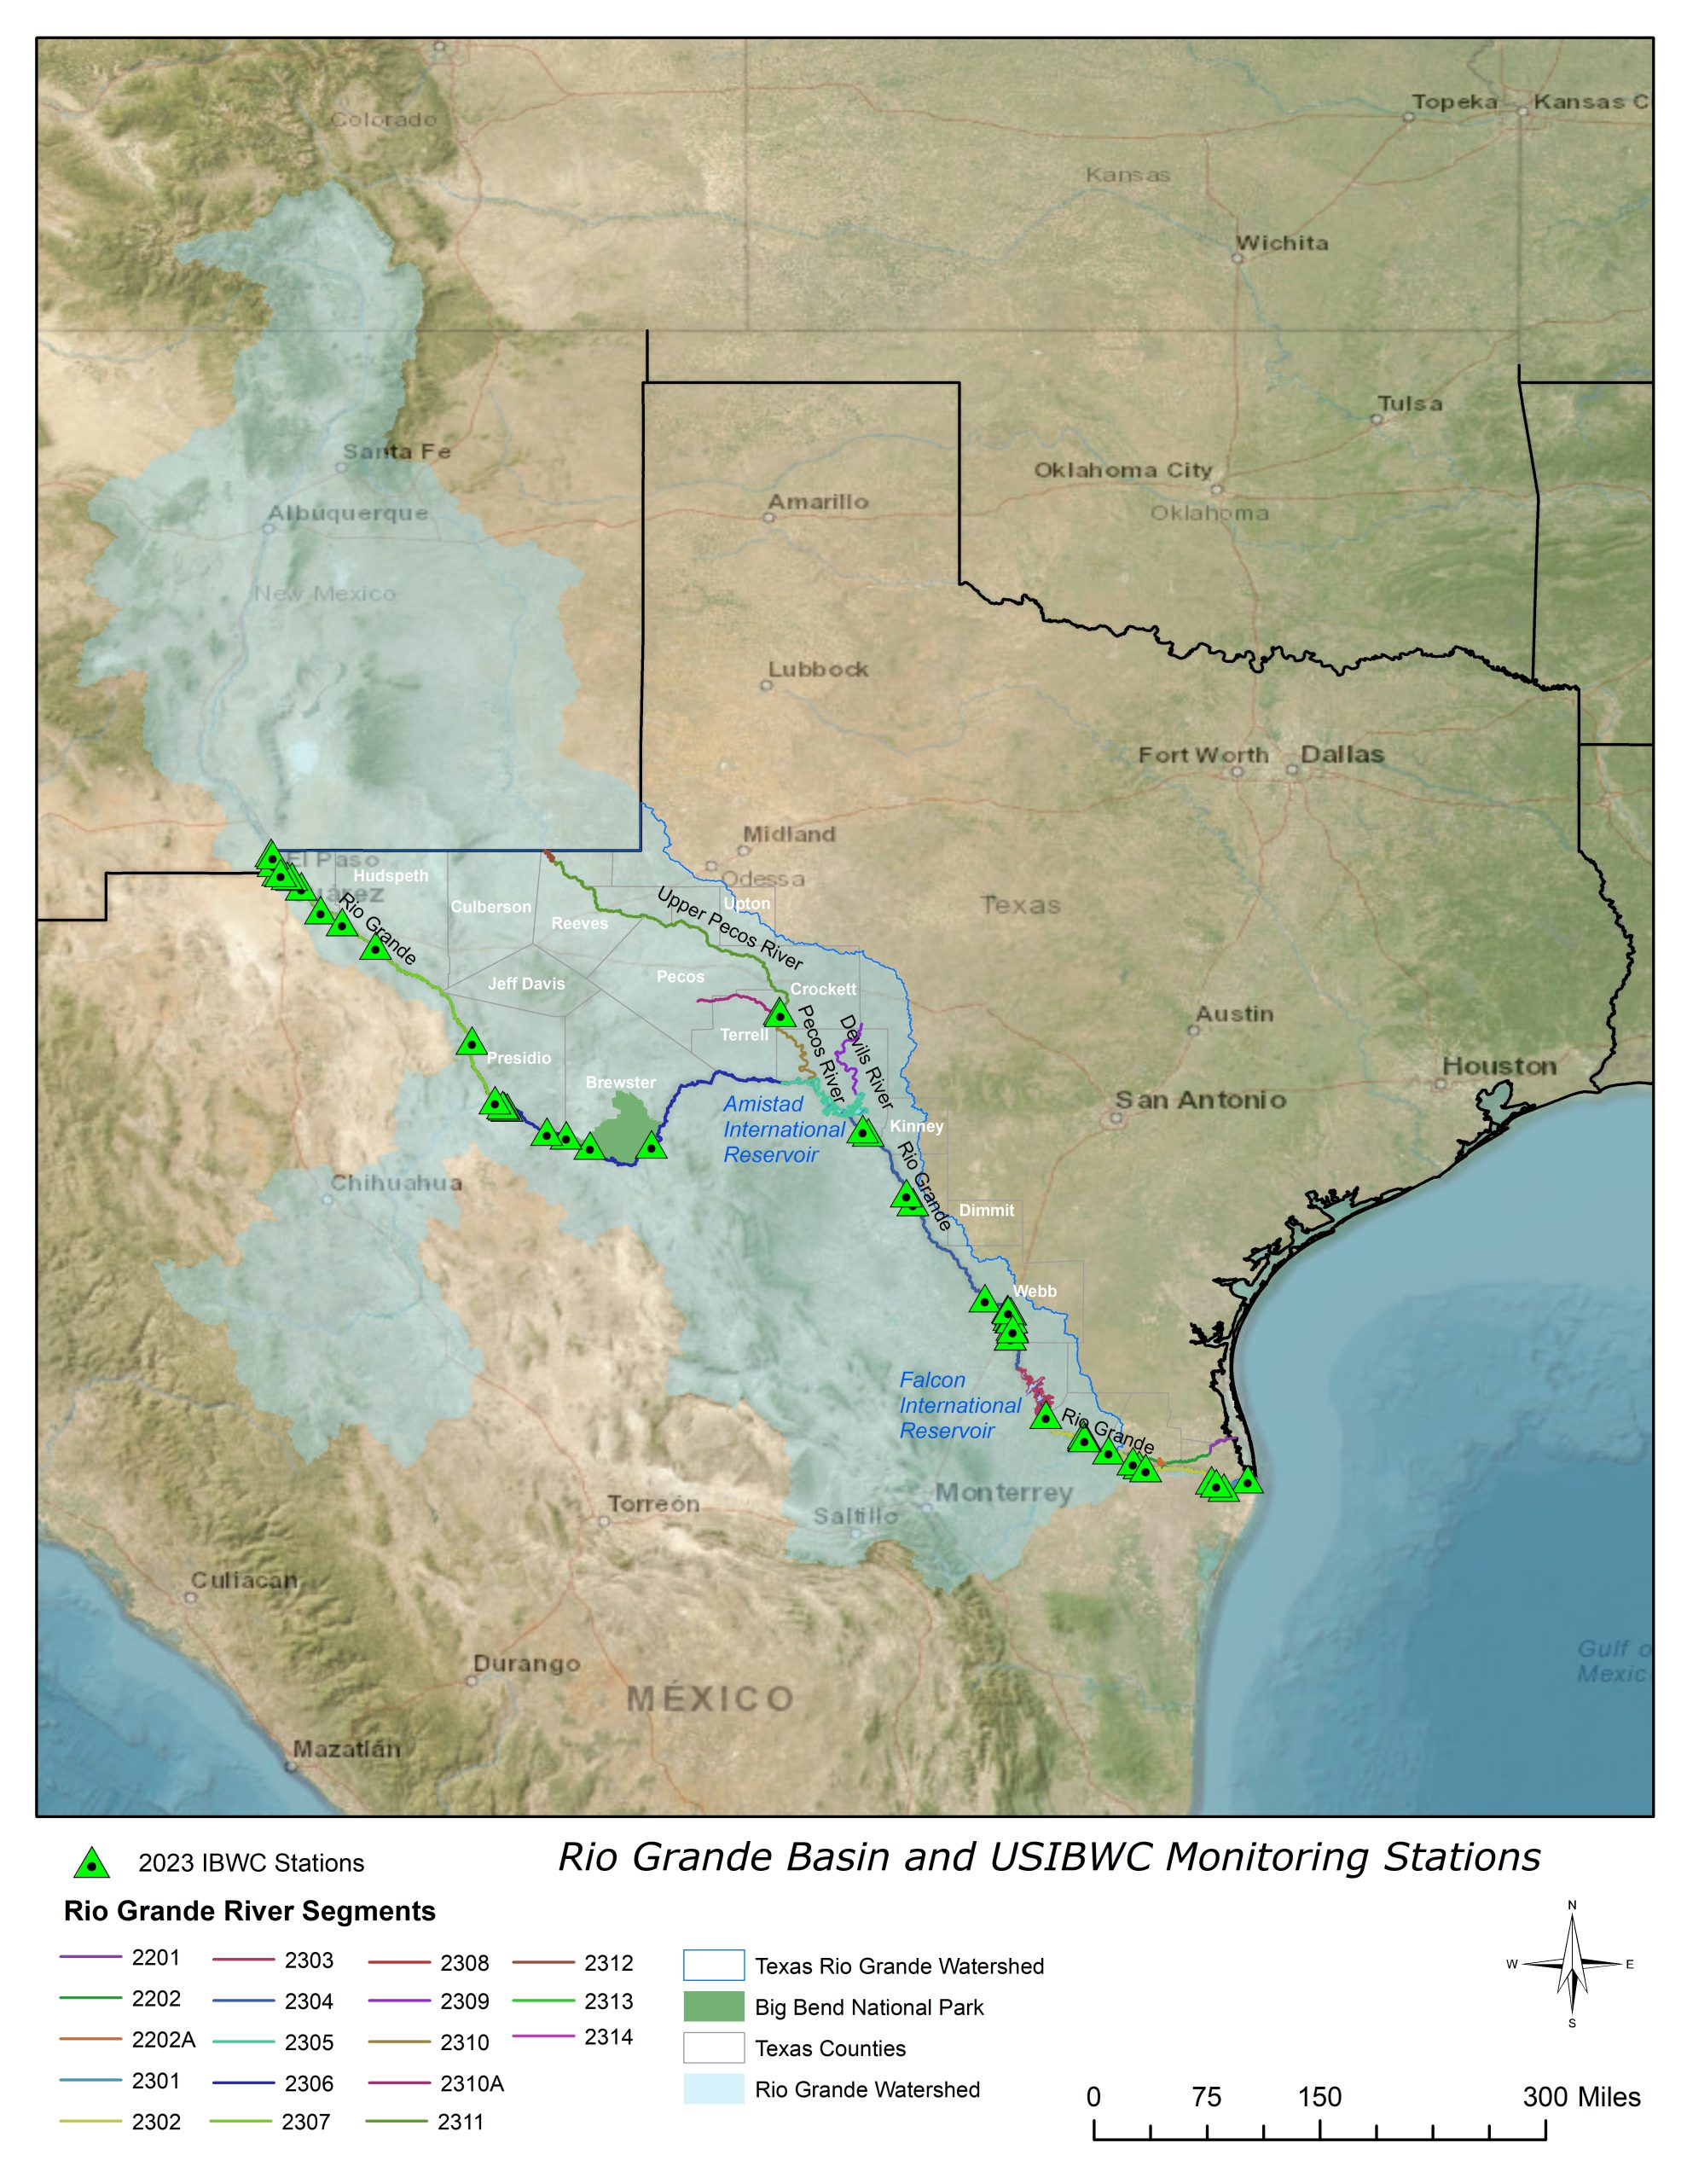 Rio Grande Basin Overview